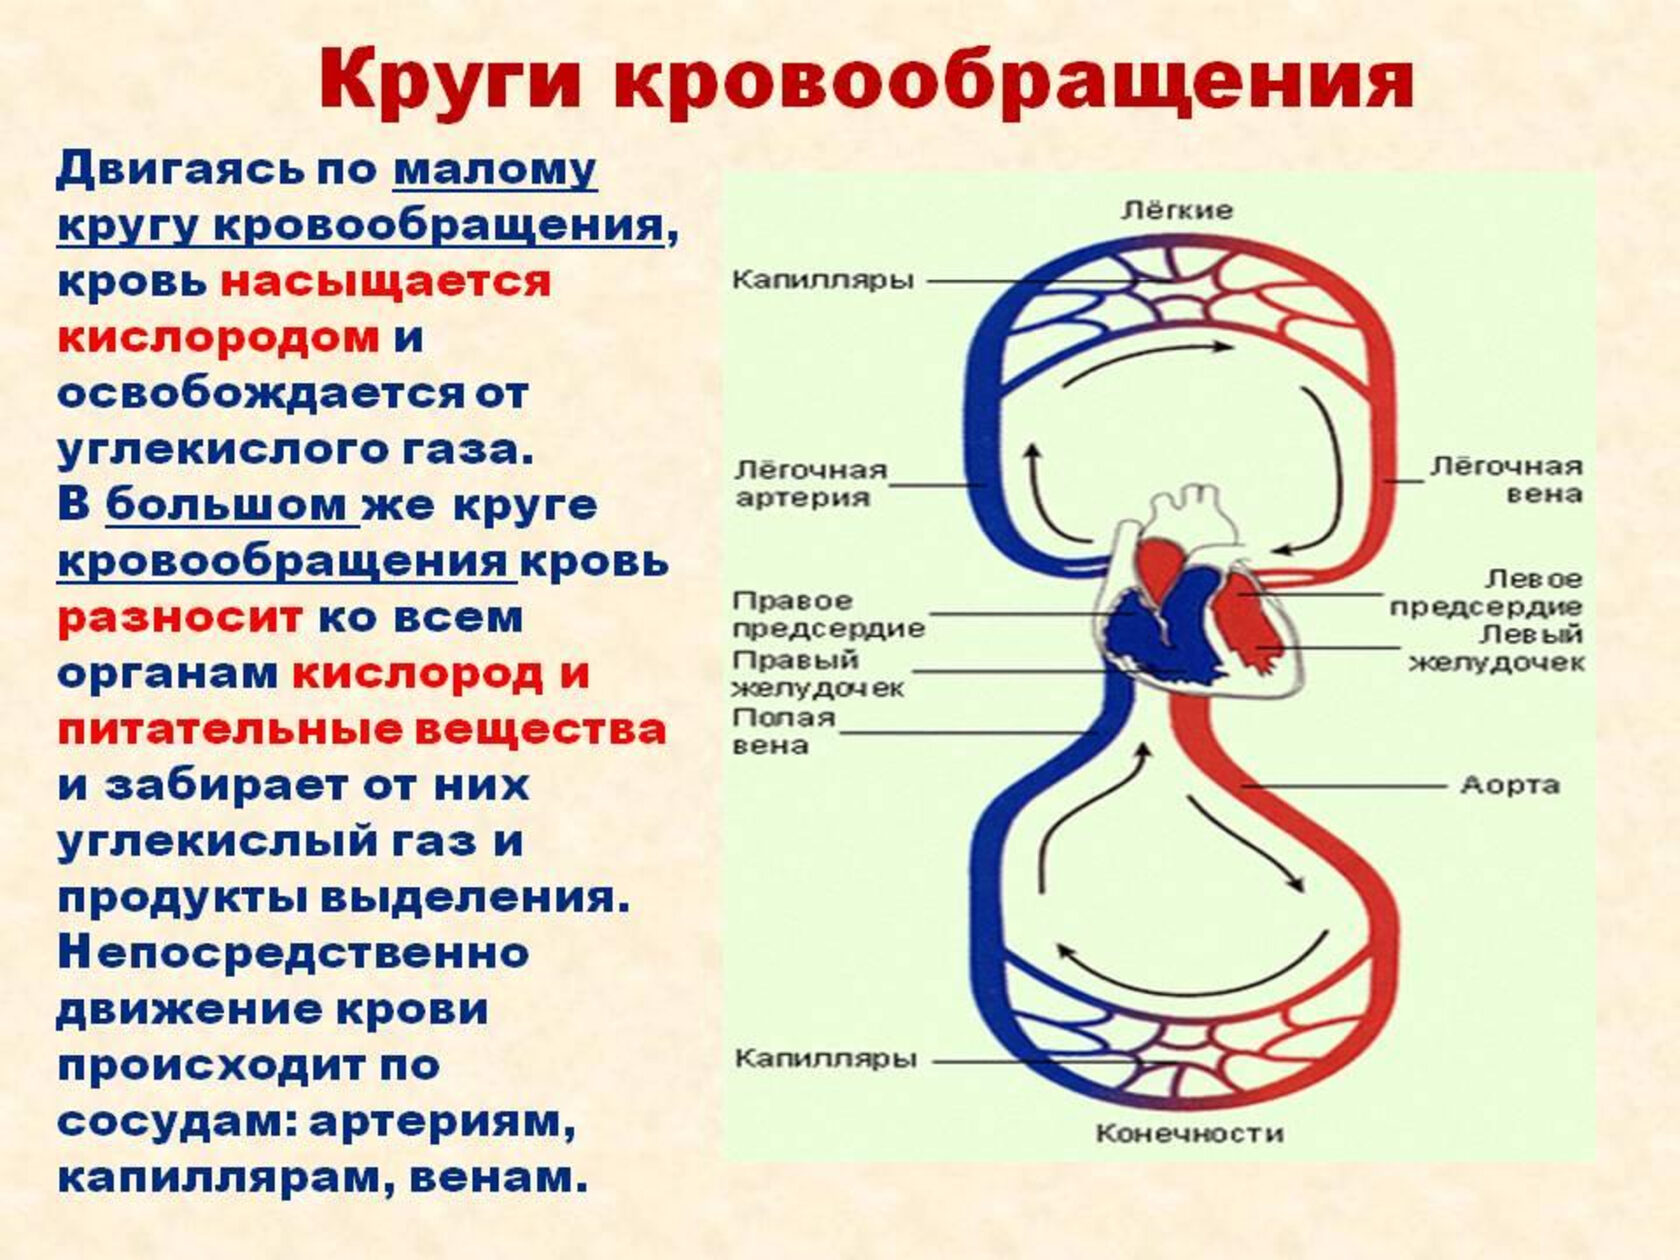 Происходит образование венозной крови из артериальной круг